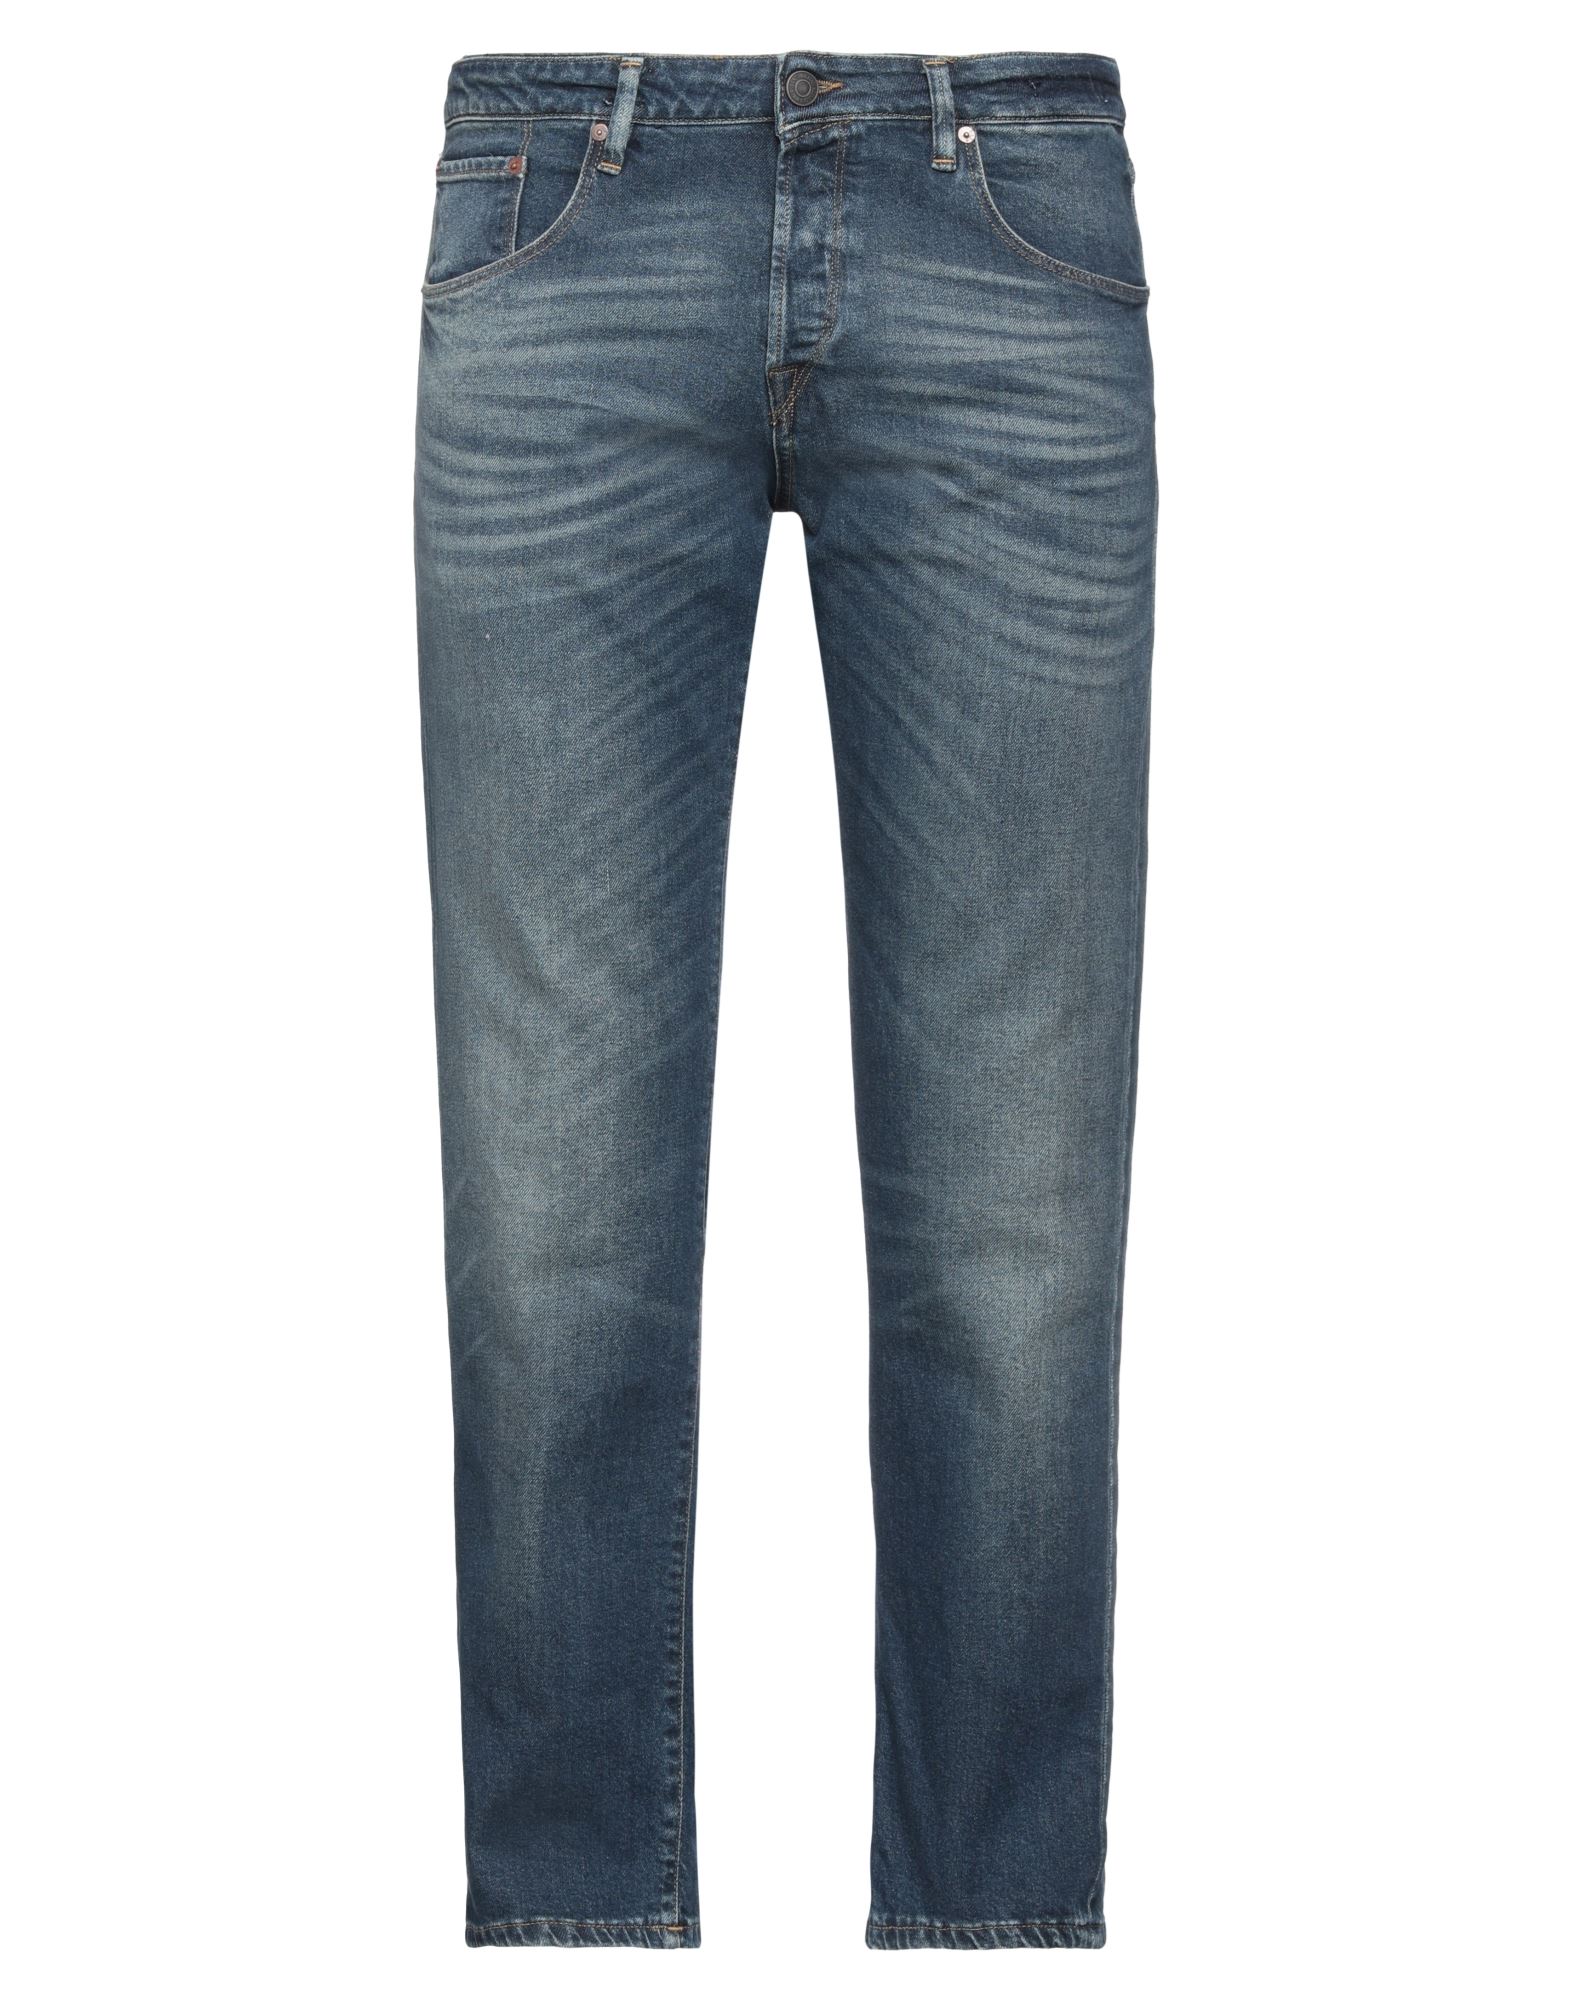 Jack & Jones Man Jeans Blue Size 31w-32l Cotton, Elastane